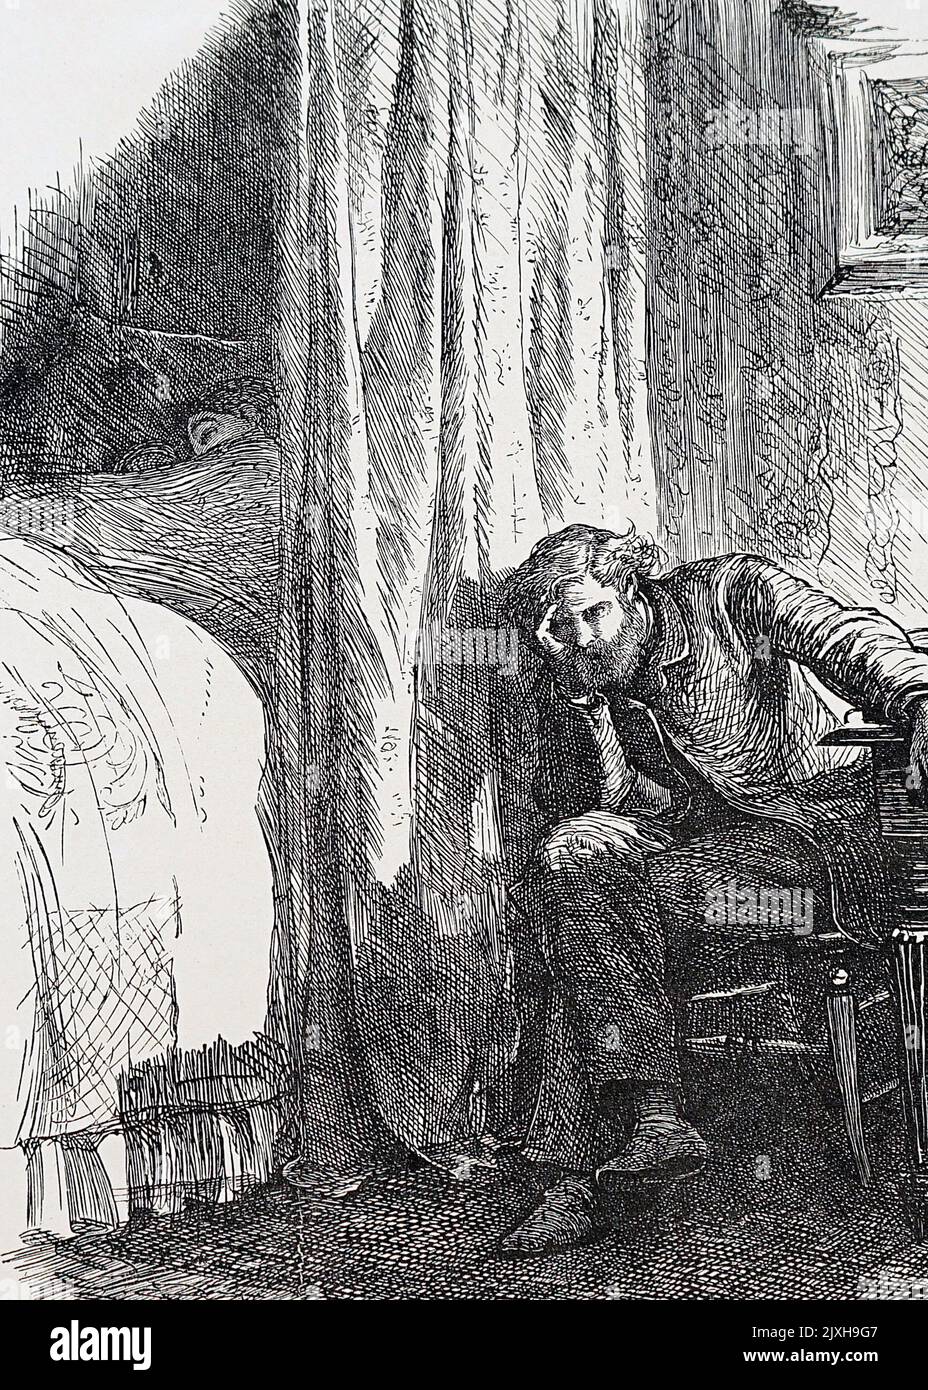 Abbildung eines Mannes in Not über seine Finanzen. Illustriert von Frederick Walker (1840-1875), einem englischen Maler und Illustrator der Sozialrealisten. Datiert aus dem 19.. Jahrhundert Stockfoto